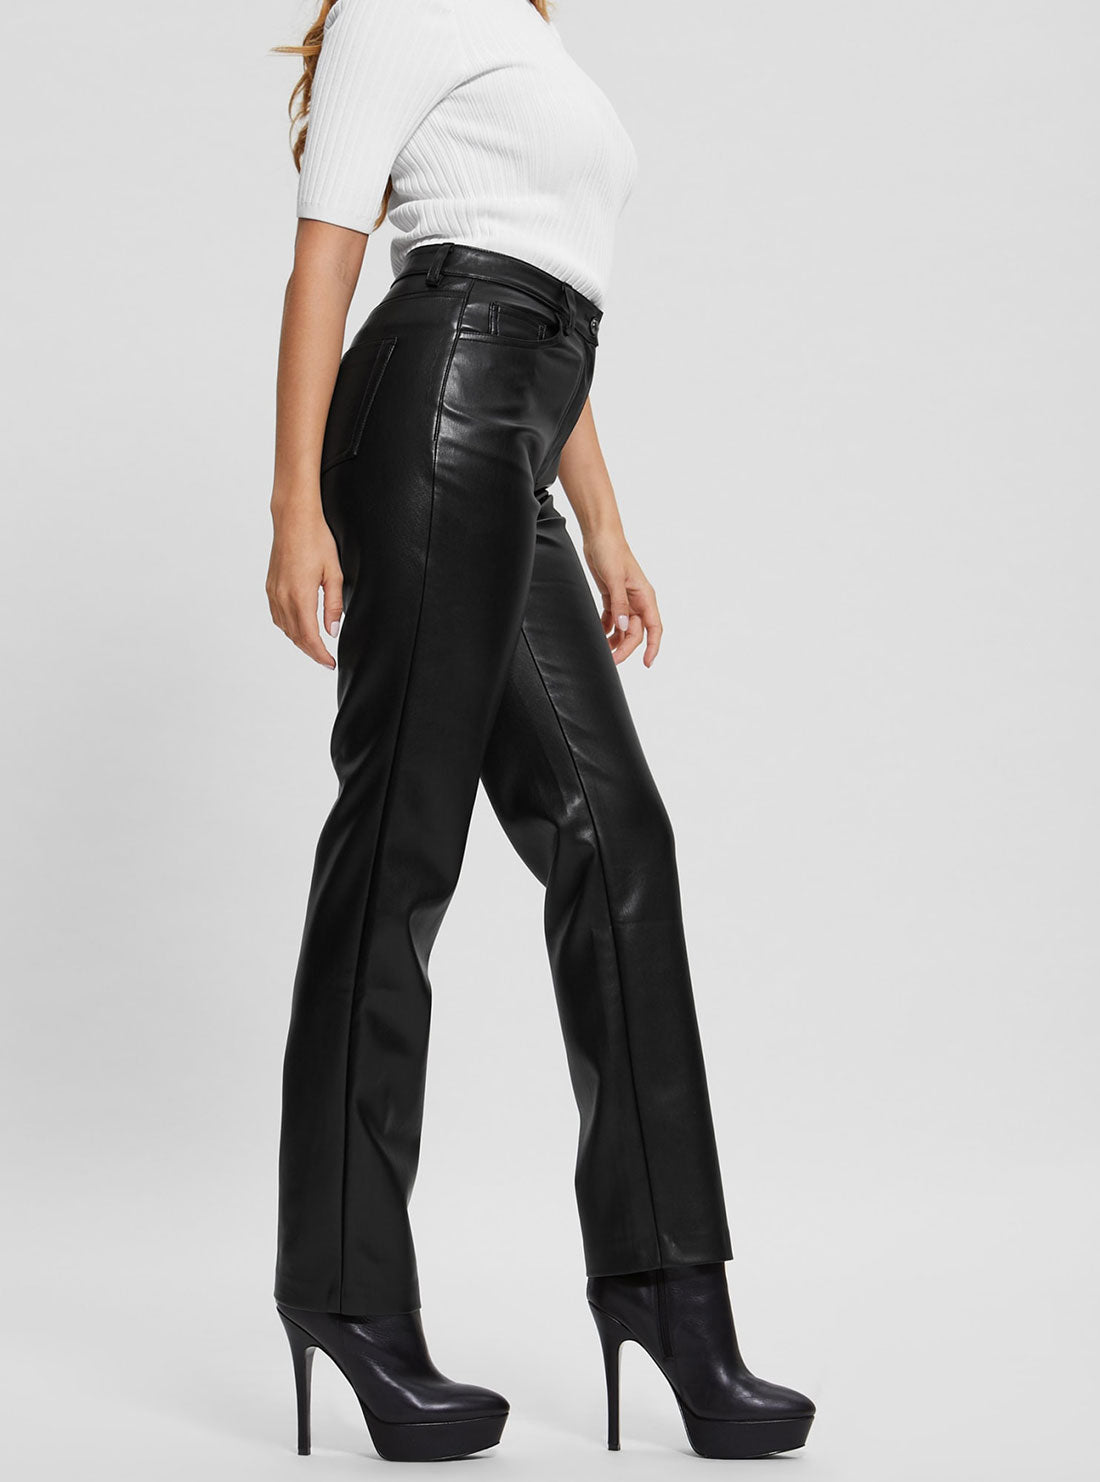 GUESS Women's Black Kelly Faux Leather Pants W3RA0MWF8P0 Side View